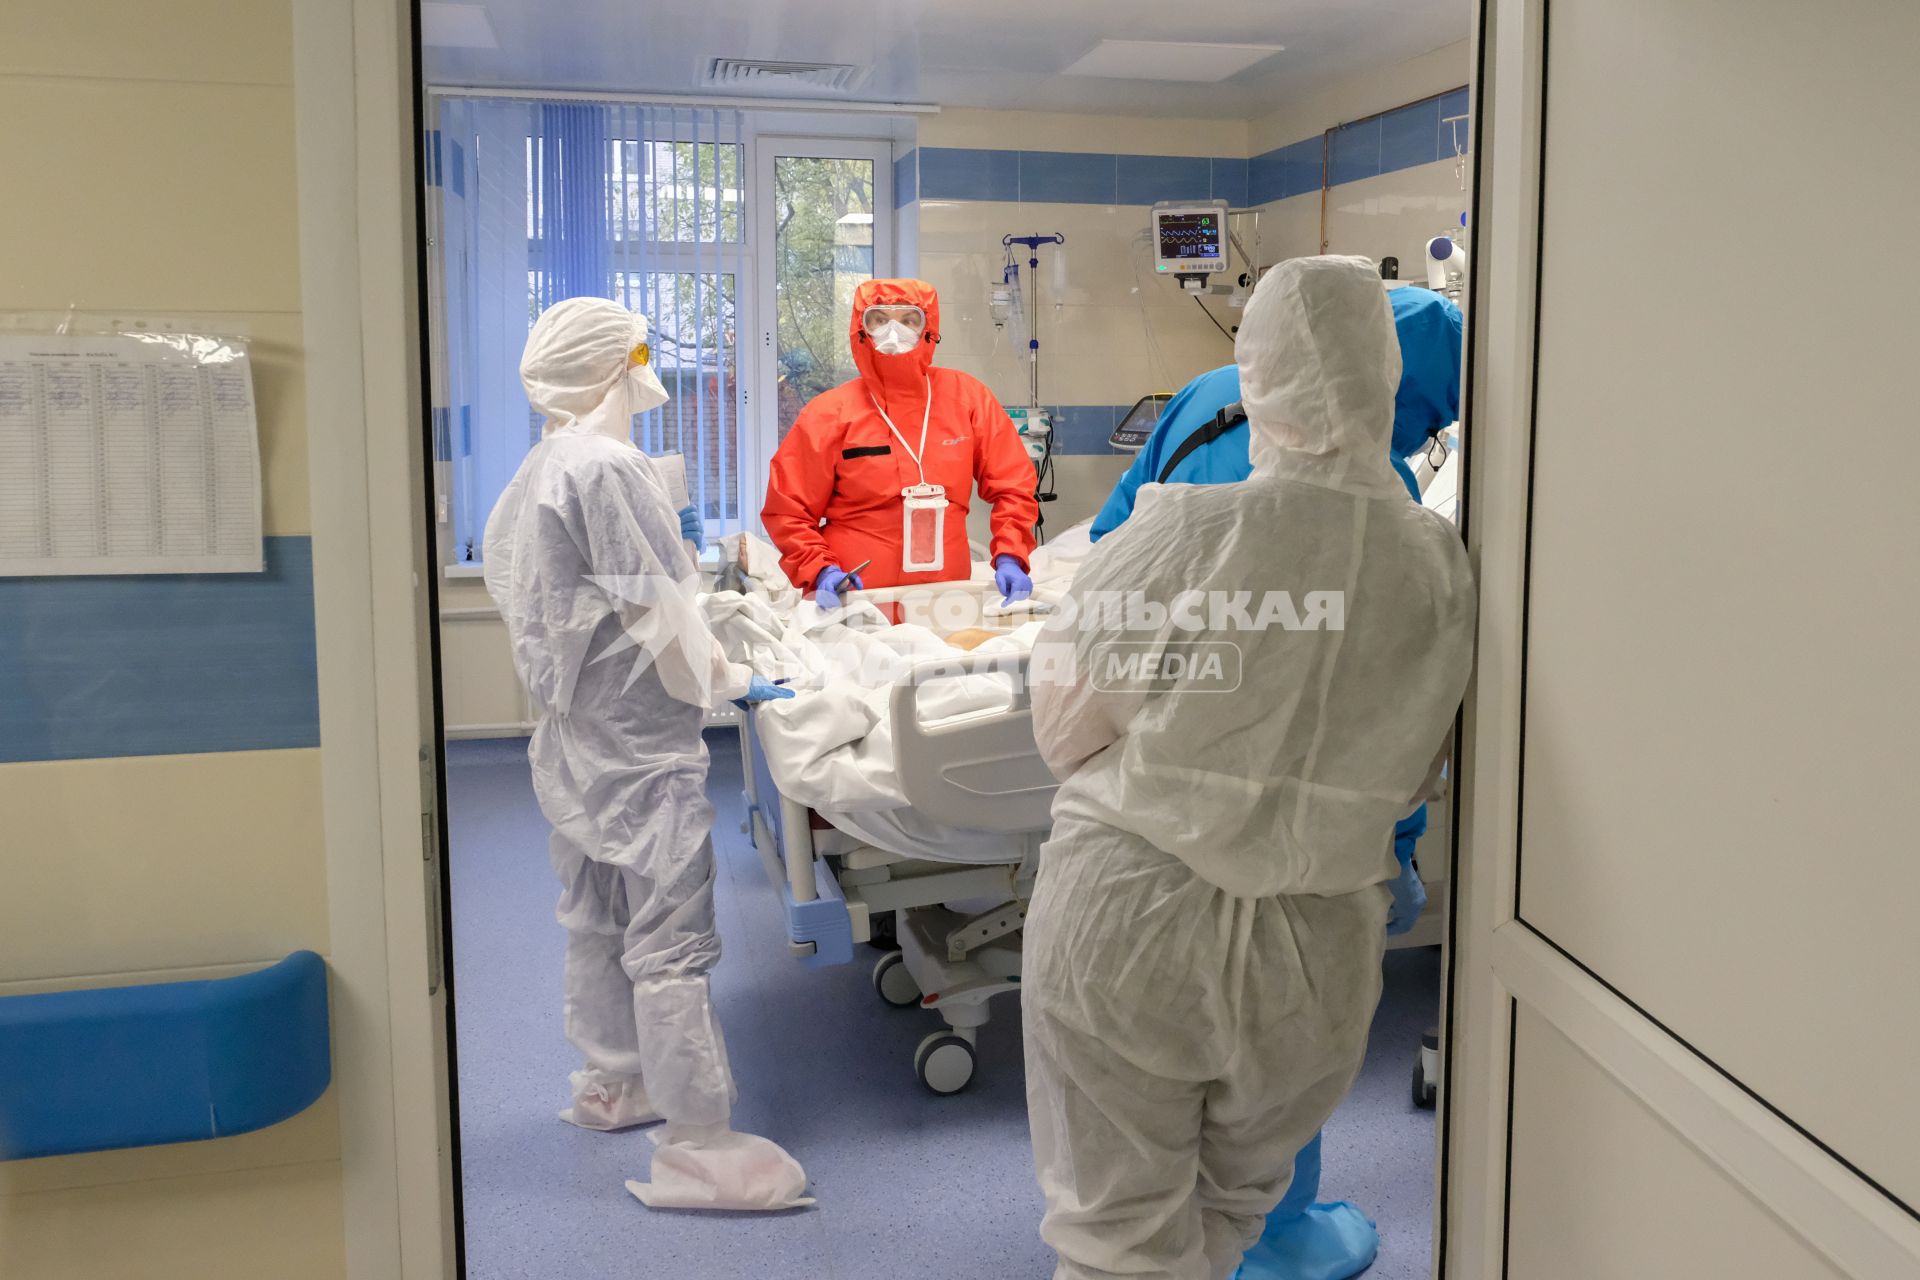 Санкт-Петербург. Медицинские работники и пациент в Александровской больнице, где оказывают помощь пациентам с коронавирусной инфекцией COVID-19.